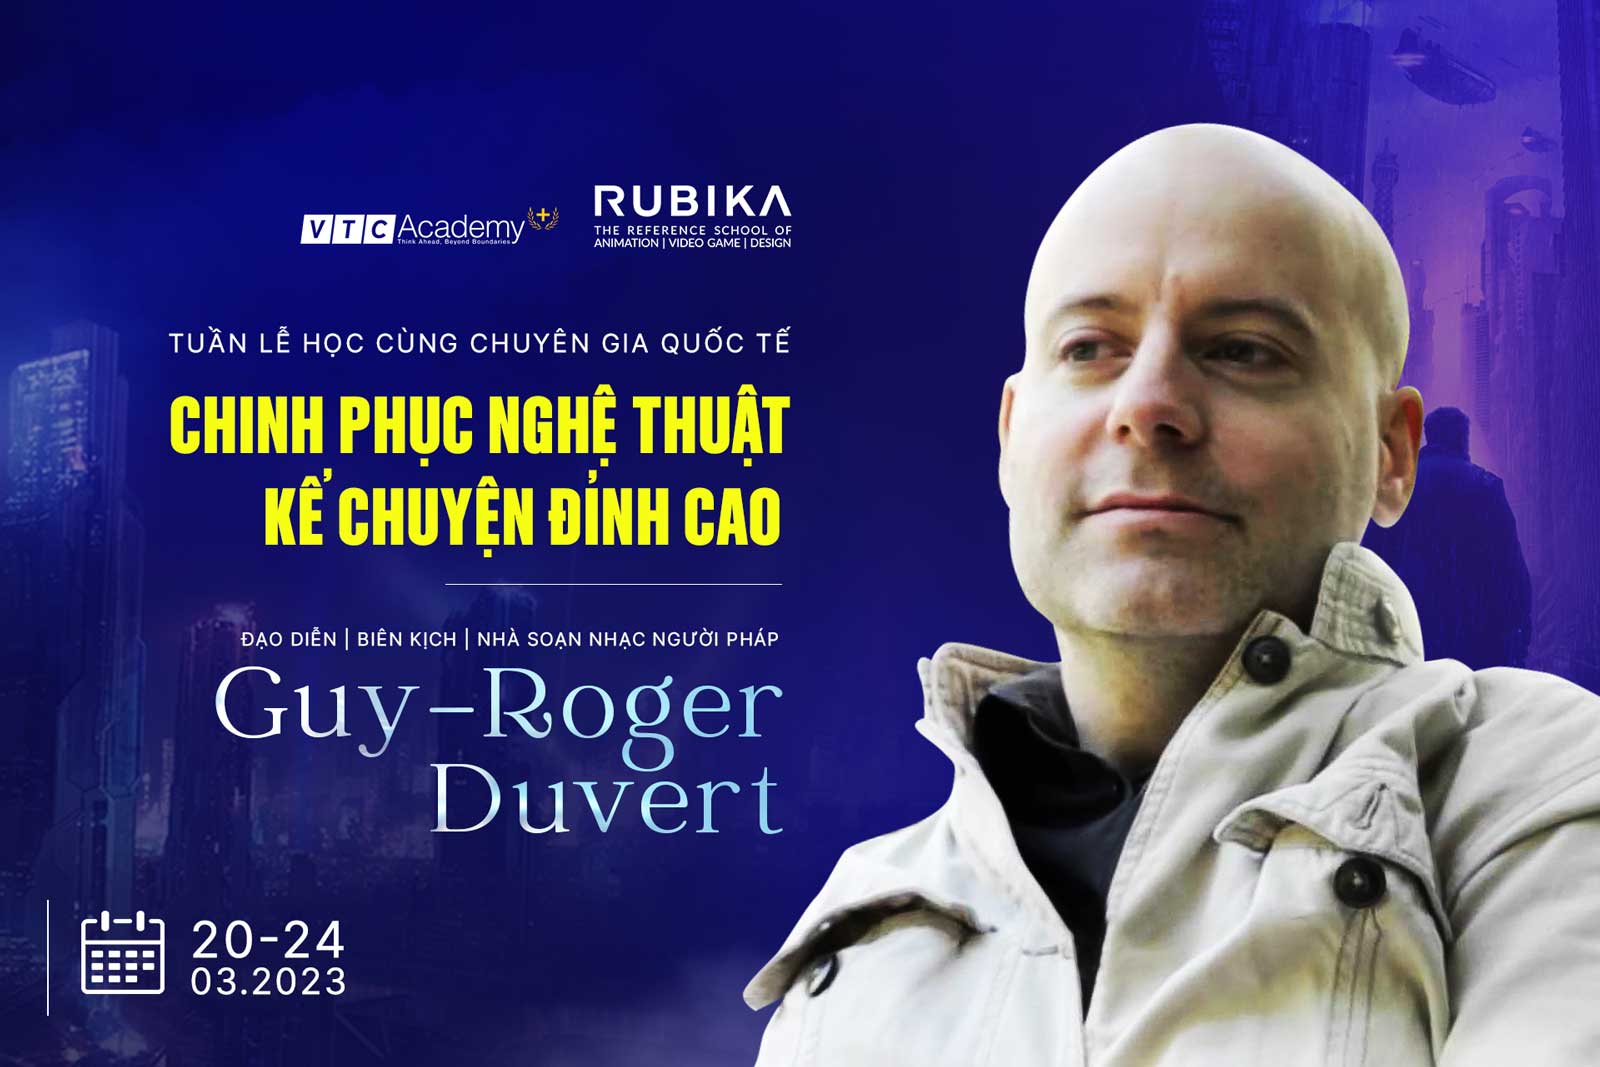 Tuần lễ học cùng chuyên gia quốc tế:  Chinh phục nghệ thuật kể chuyện đỉnh cao cùng đạo diễn người Pháp – Guy-Roger Duvert